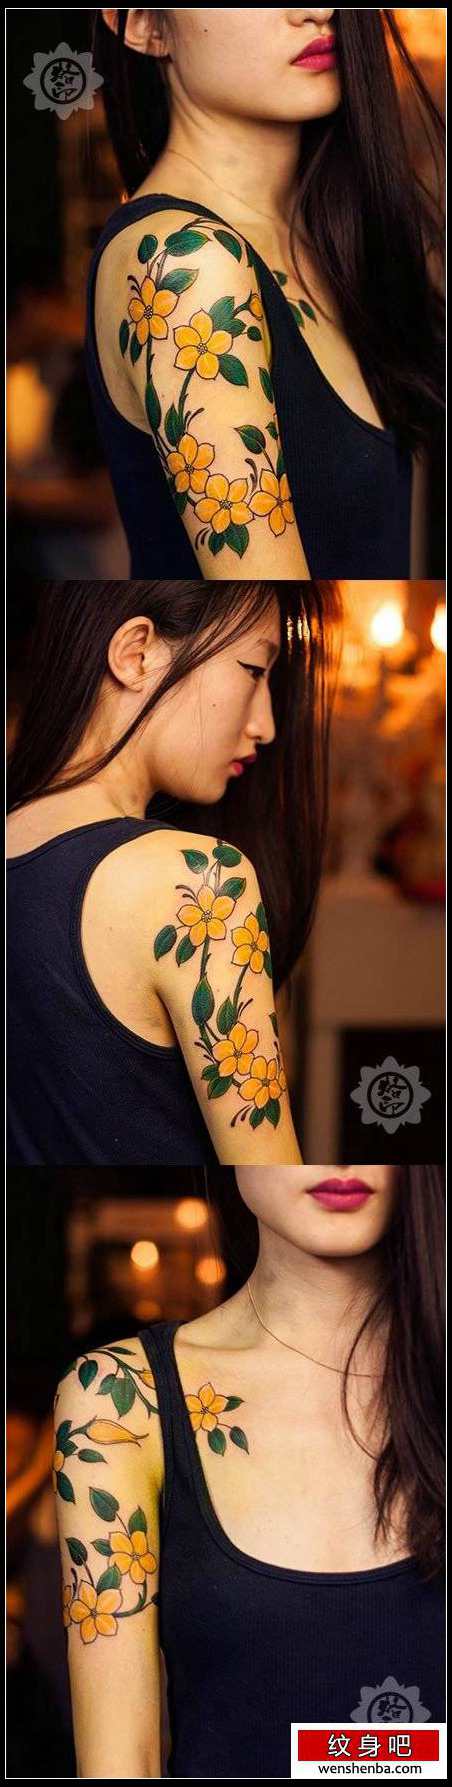 女人手臂漂亮精致的花卉纹身